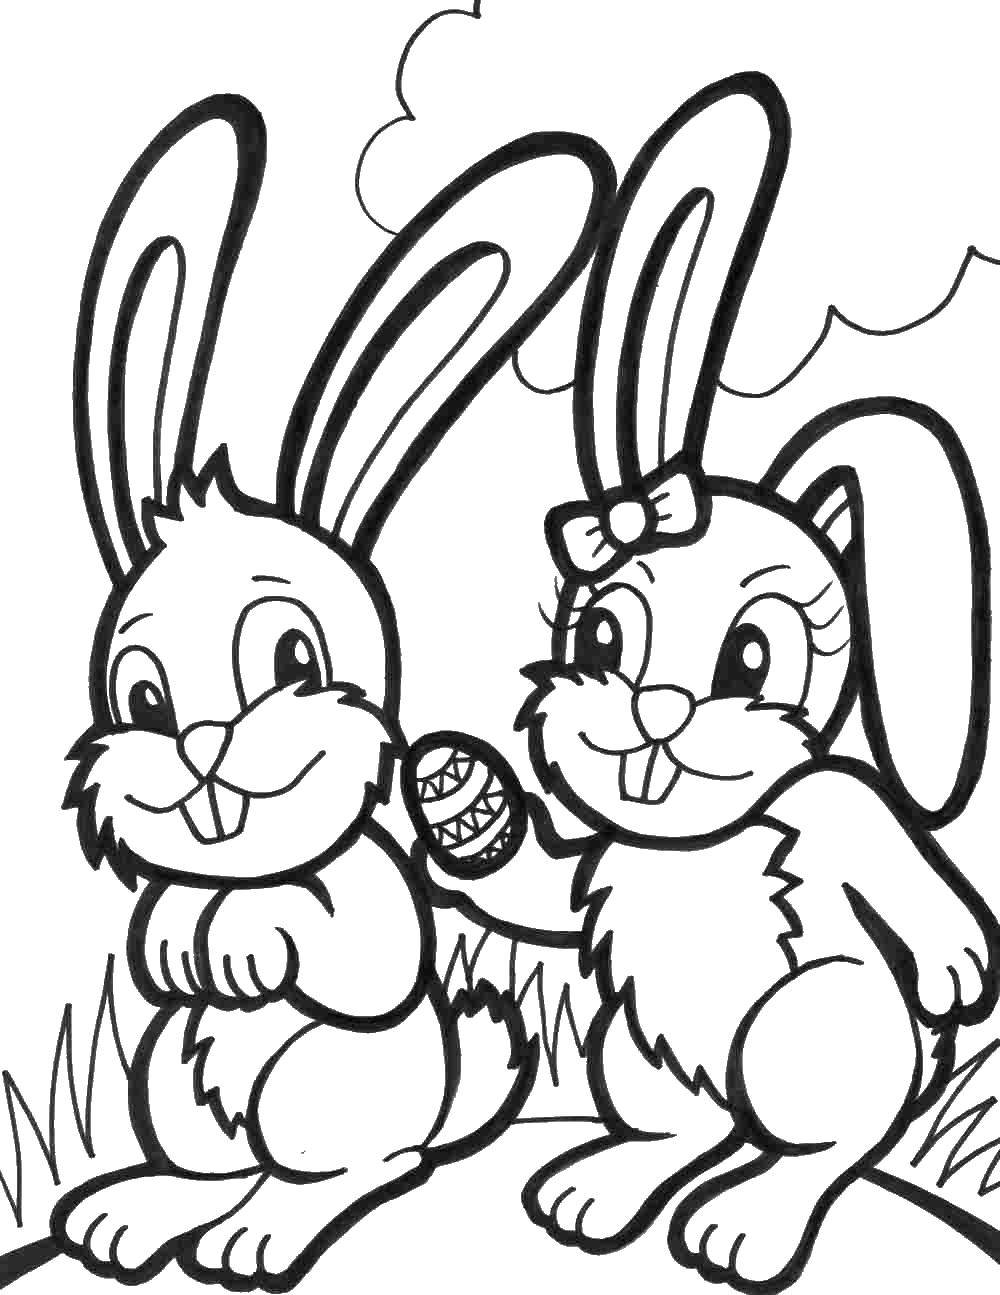 Опис: розмальовки  Кролики з крашанкою. Категорія: розмальовки великдень. Теги:  паска, яйця, кролик.